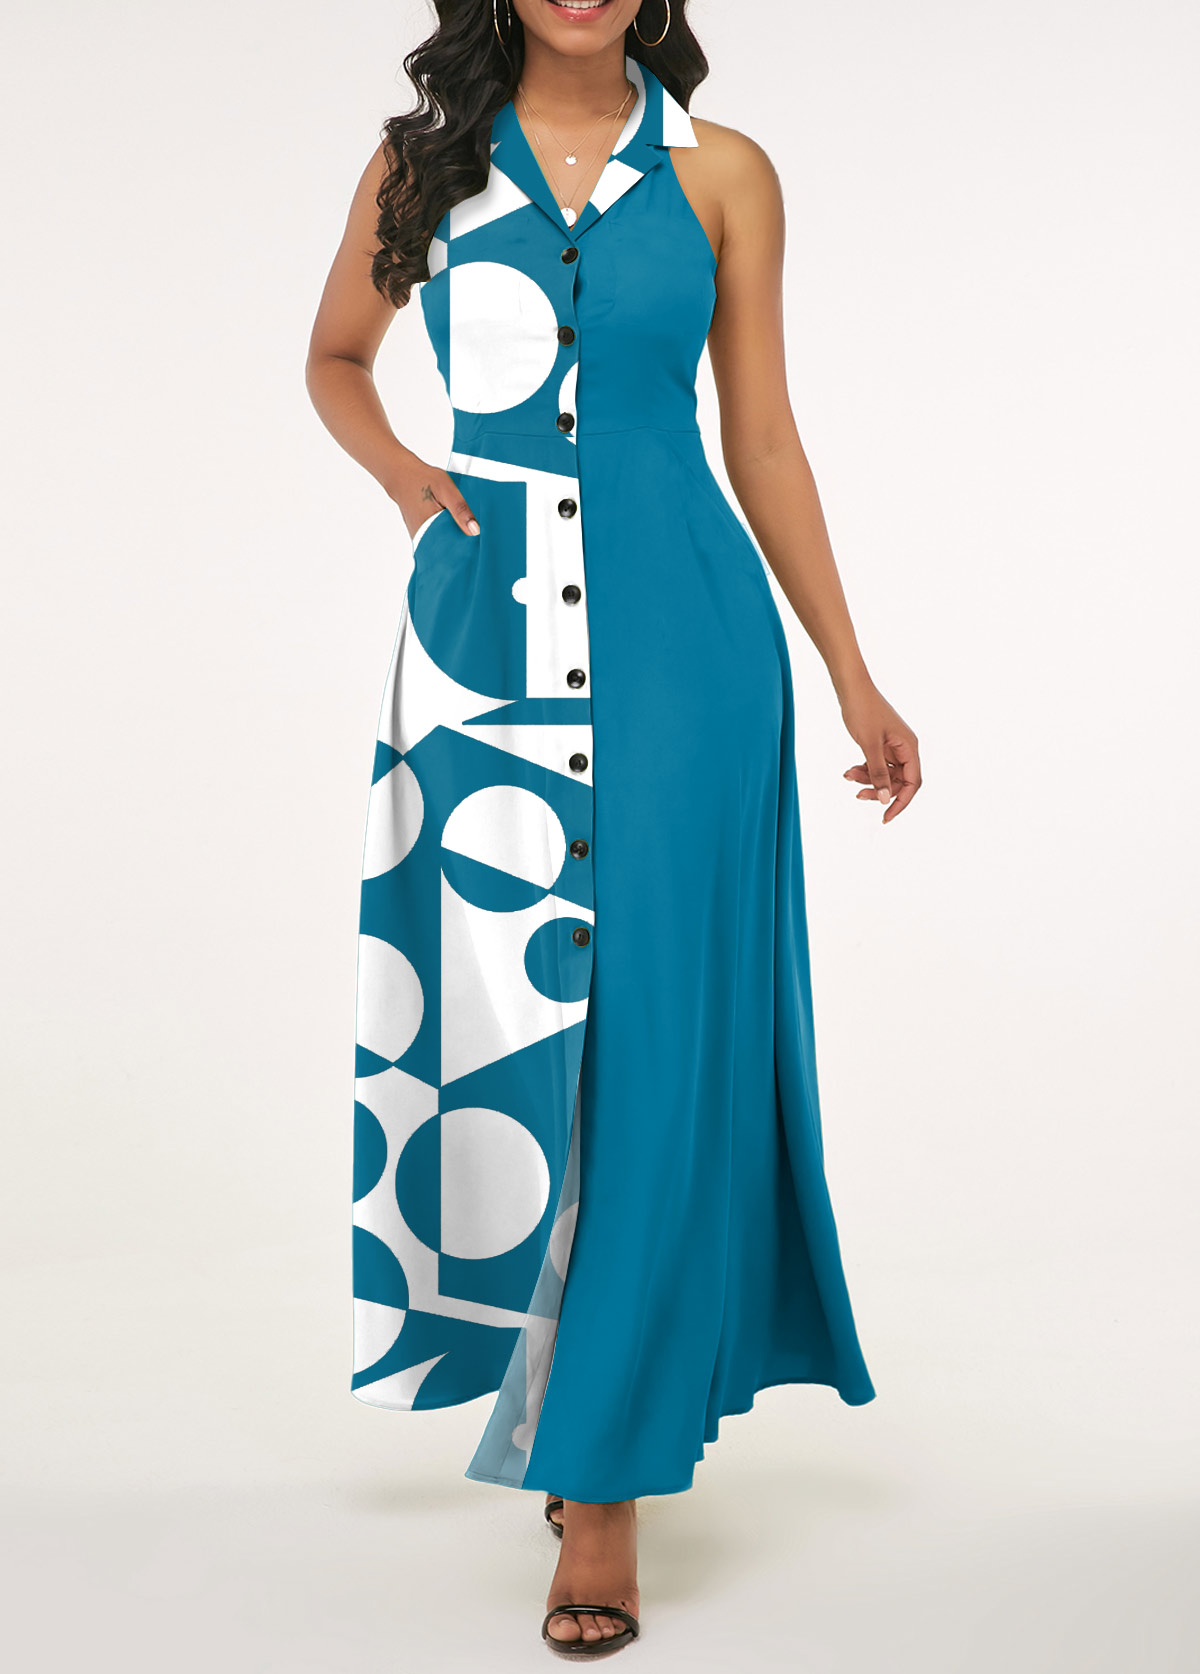 Blaues ärmelloses Rotita-Kleid mit geometrischem Print und Revers